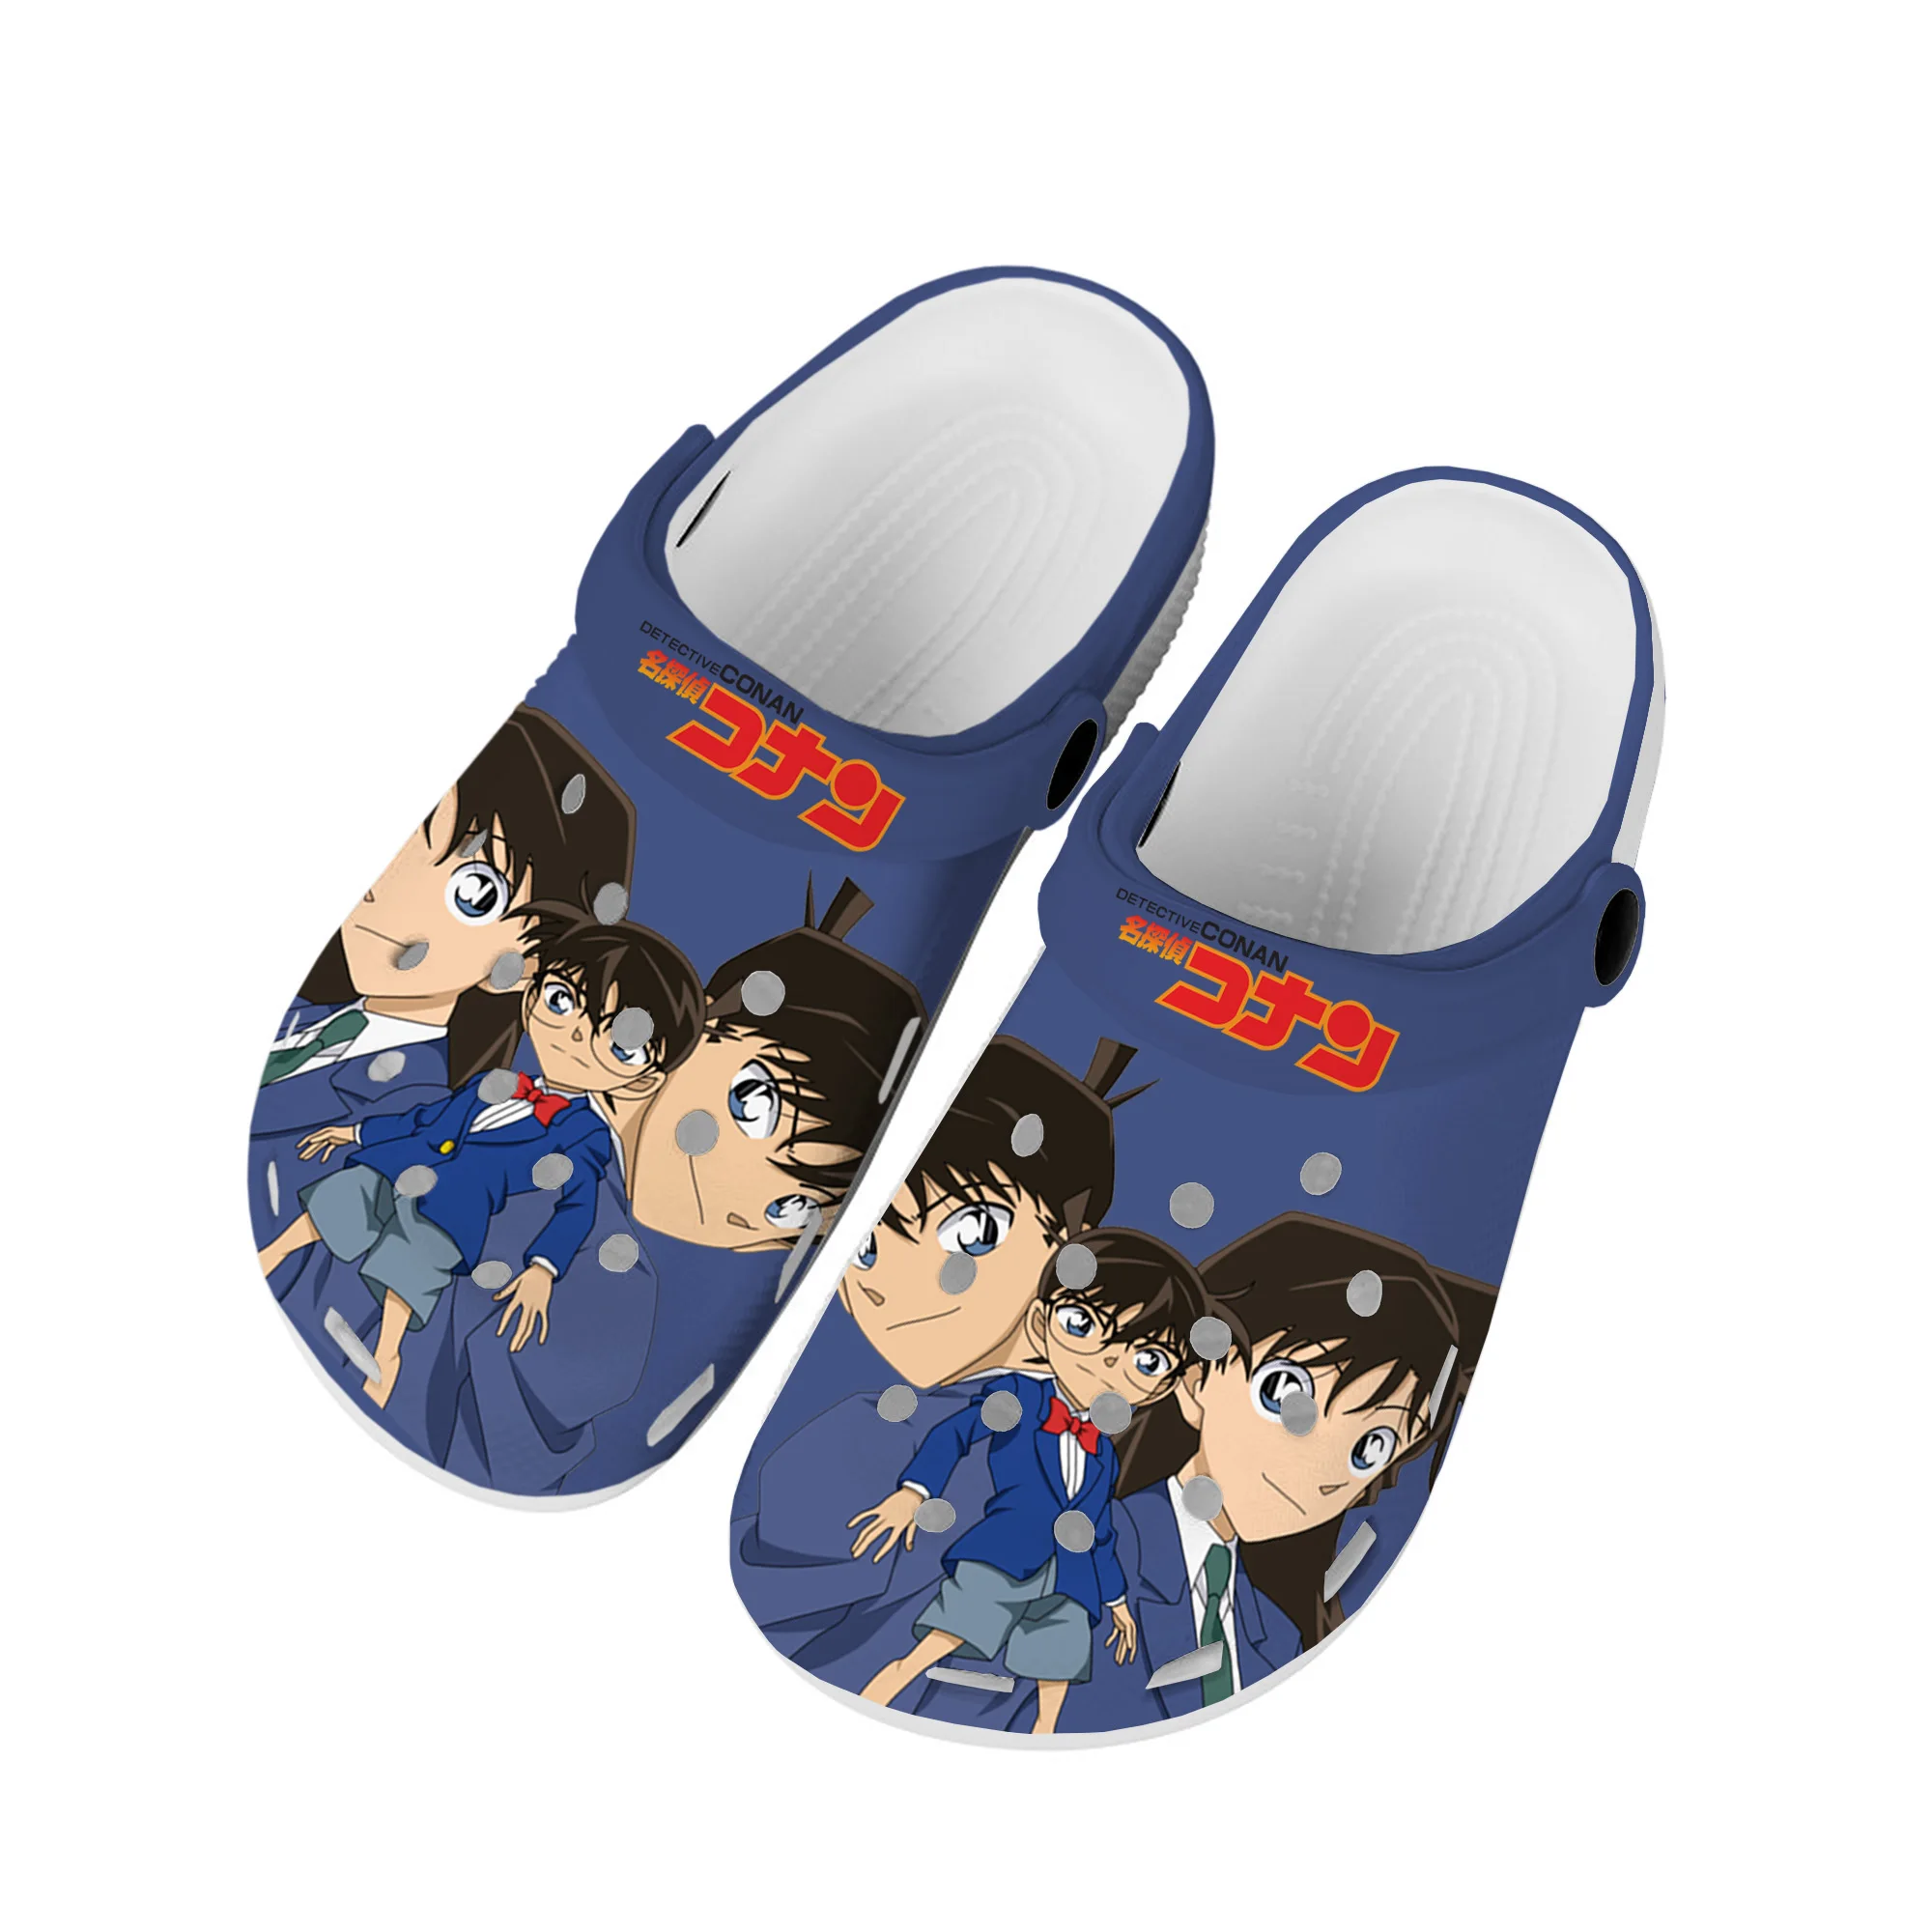 

Detective Conan мультфильм Домашние Сабо пользовательские водные ботинки мужские женские подростковая обувь садовые Туфли-сабо пляжные тапки с отверстиями Повседневные тапочки